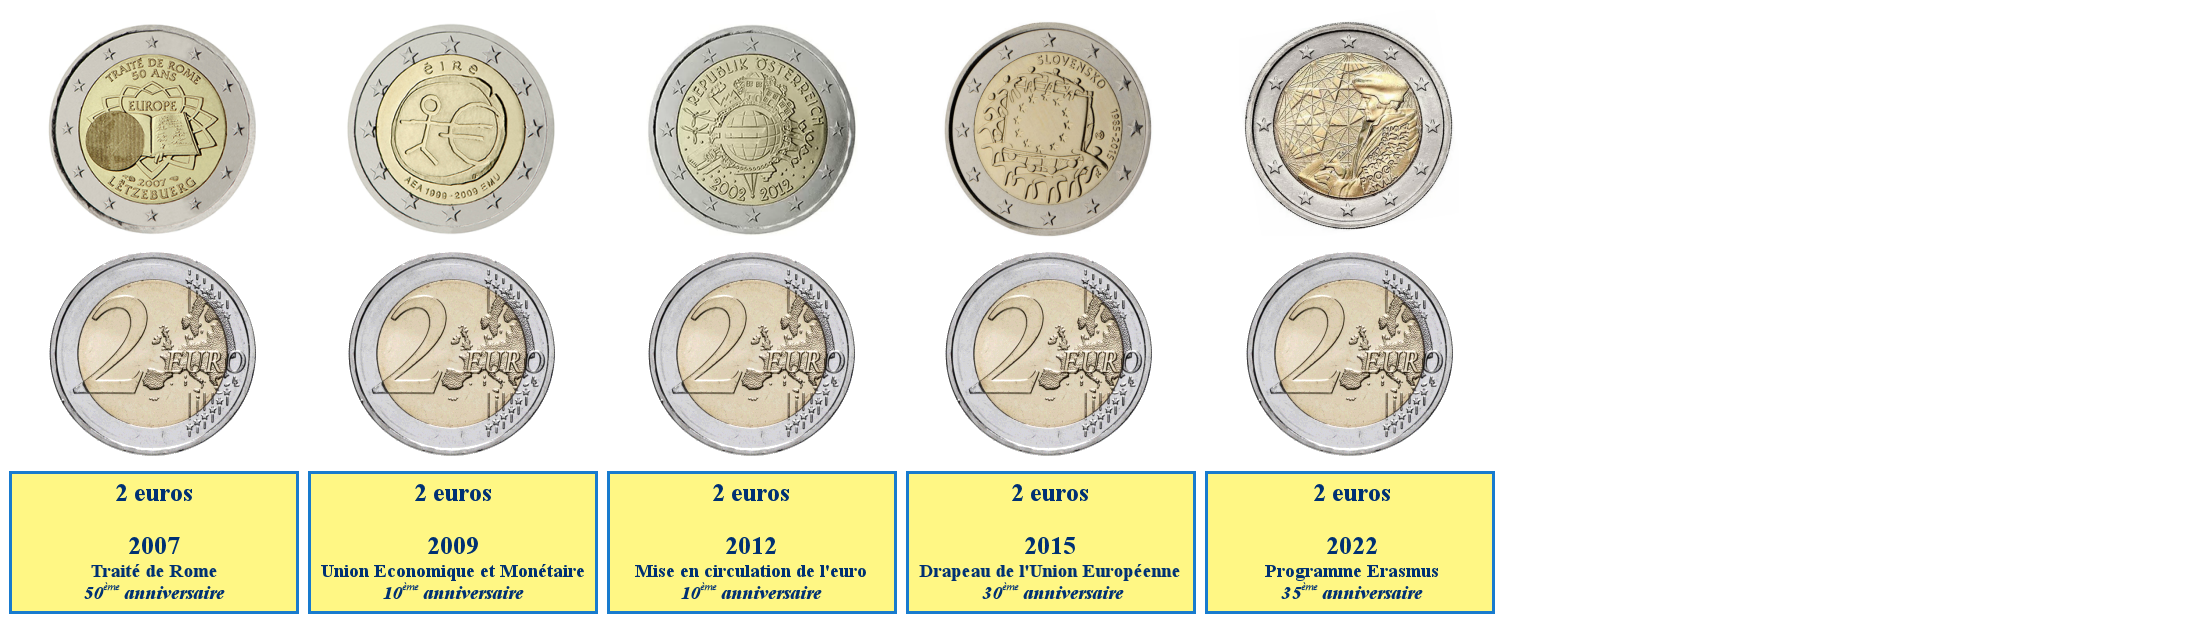 Photo de pièces de 2 euros commémoratives